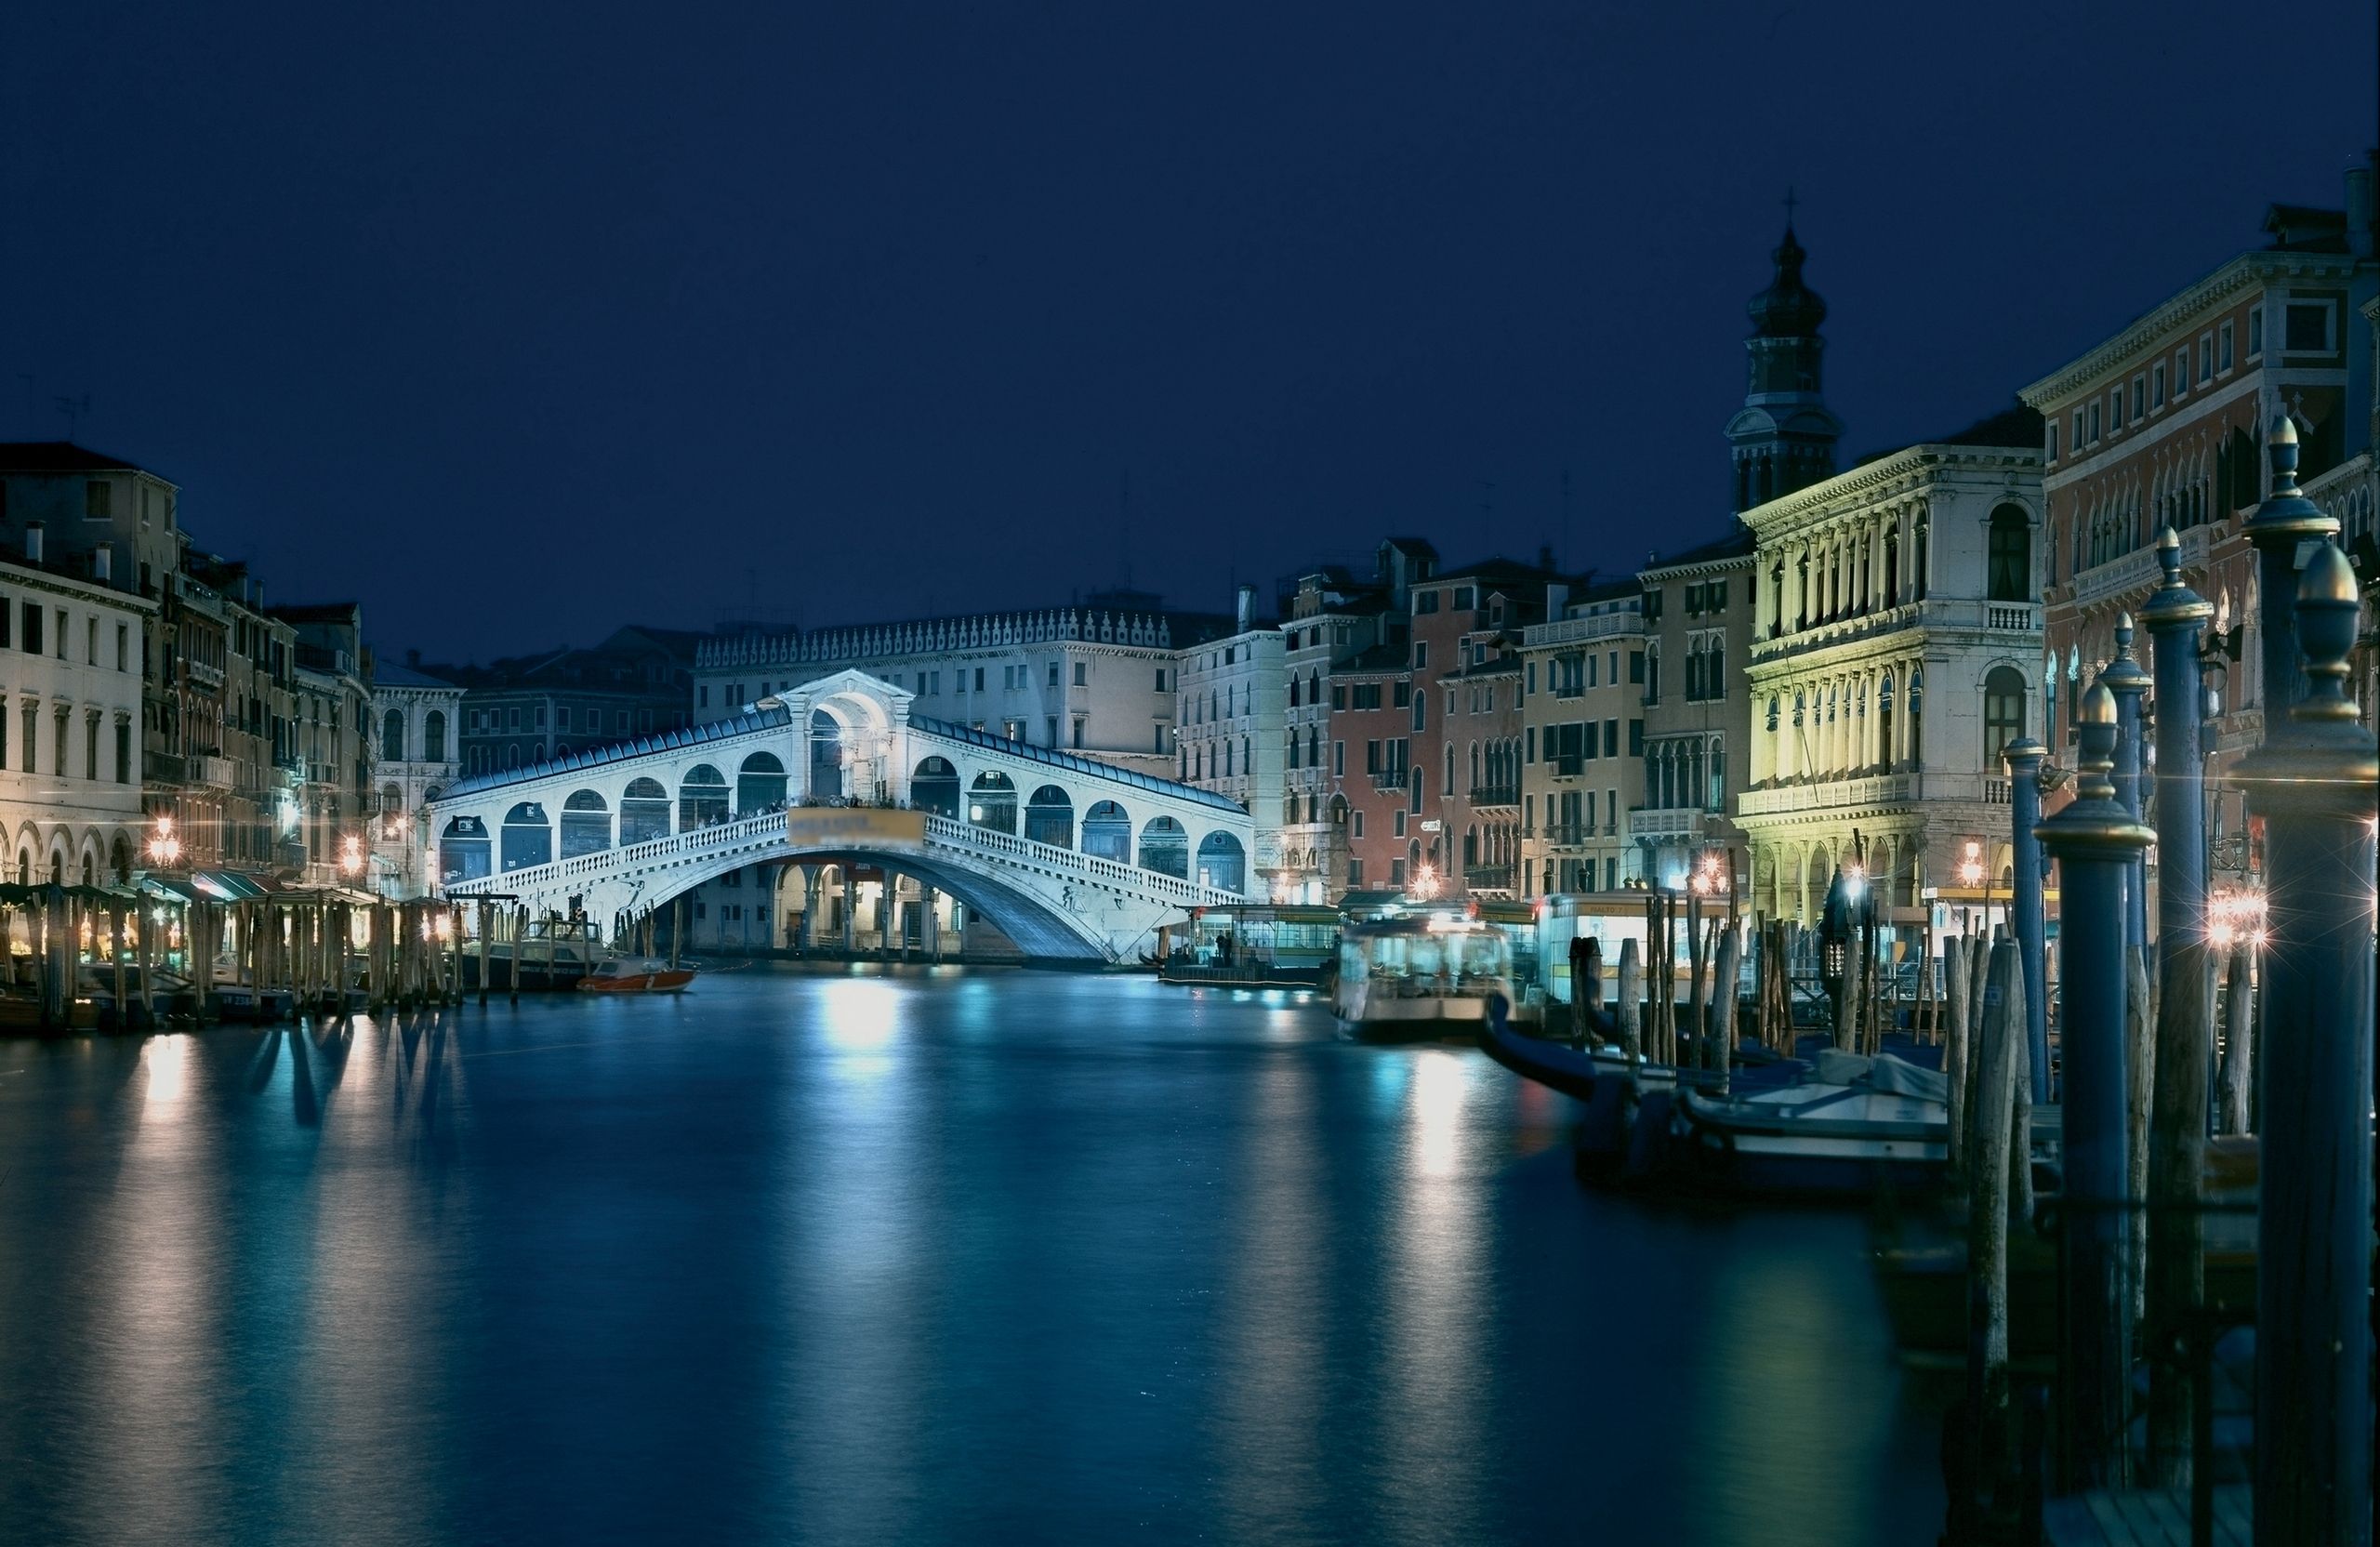 Venice City HD Wallpapers | Venice City Desktop Images | Cool ...